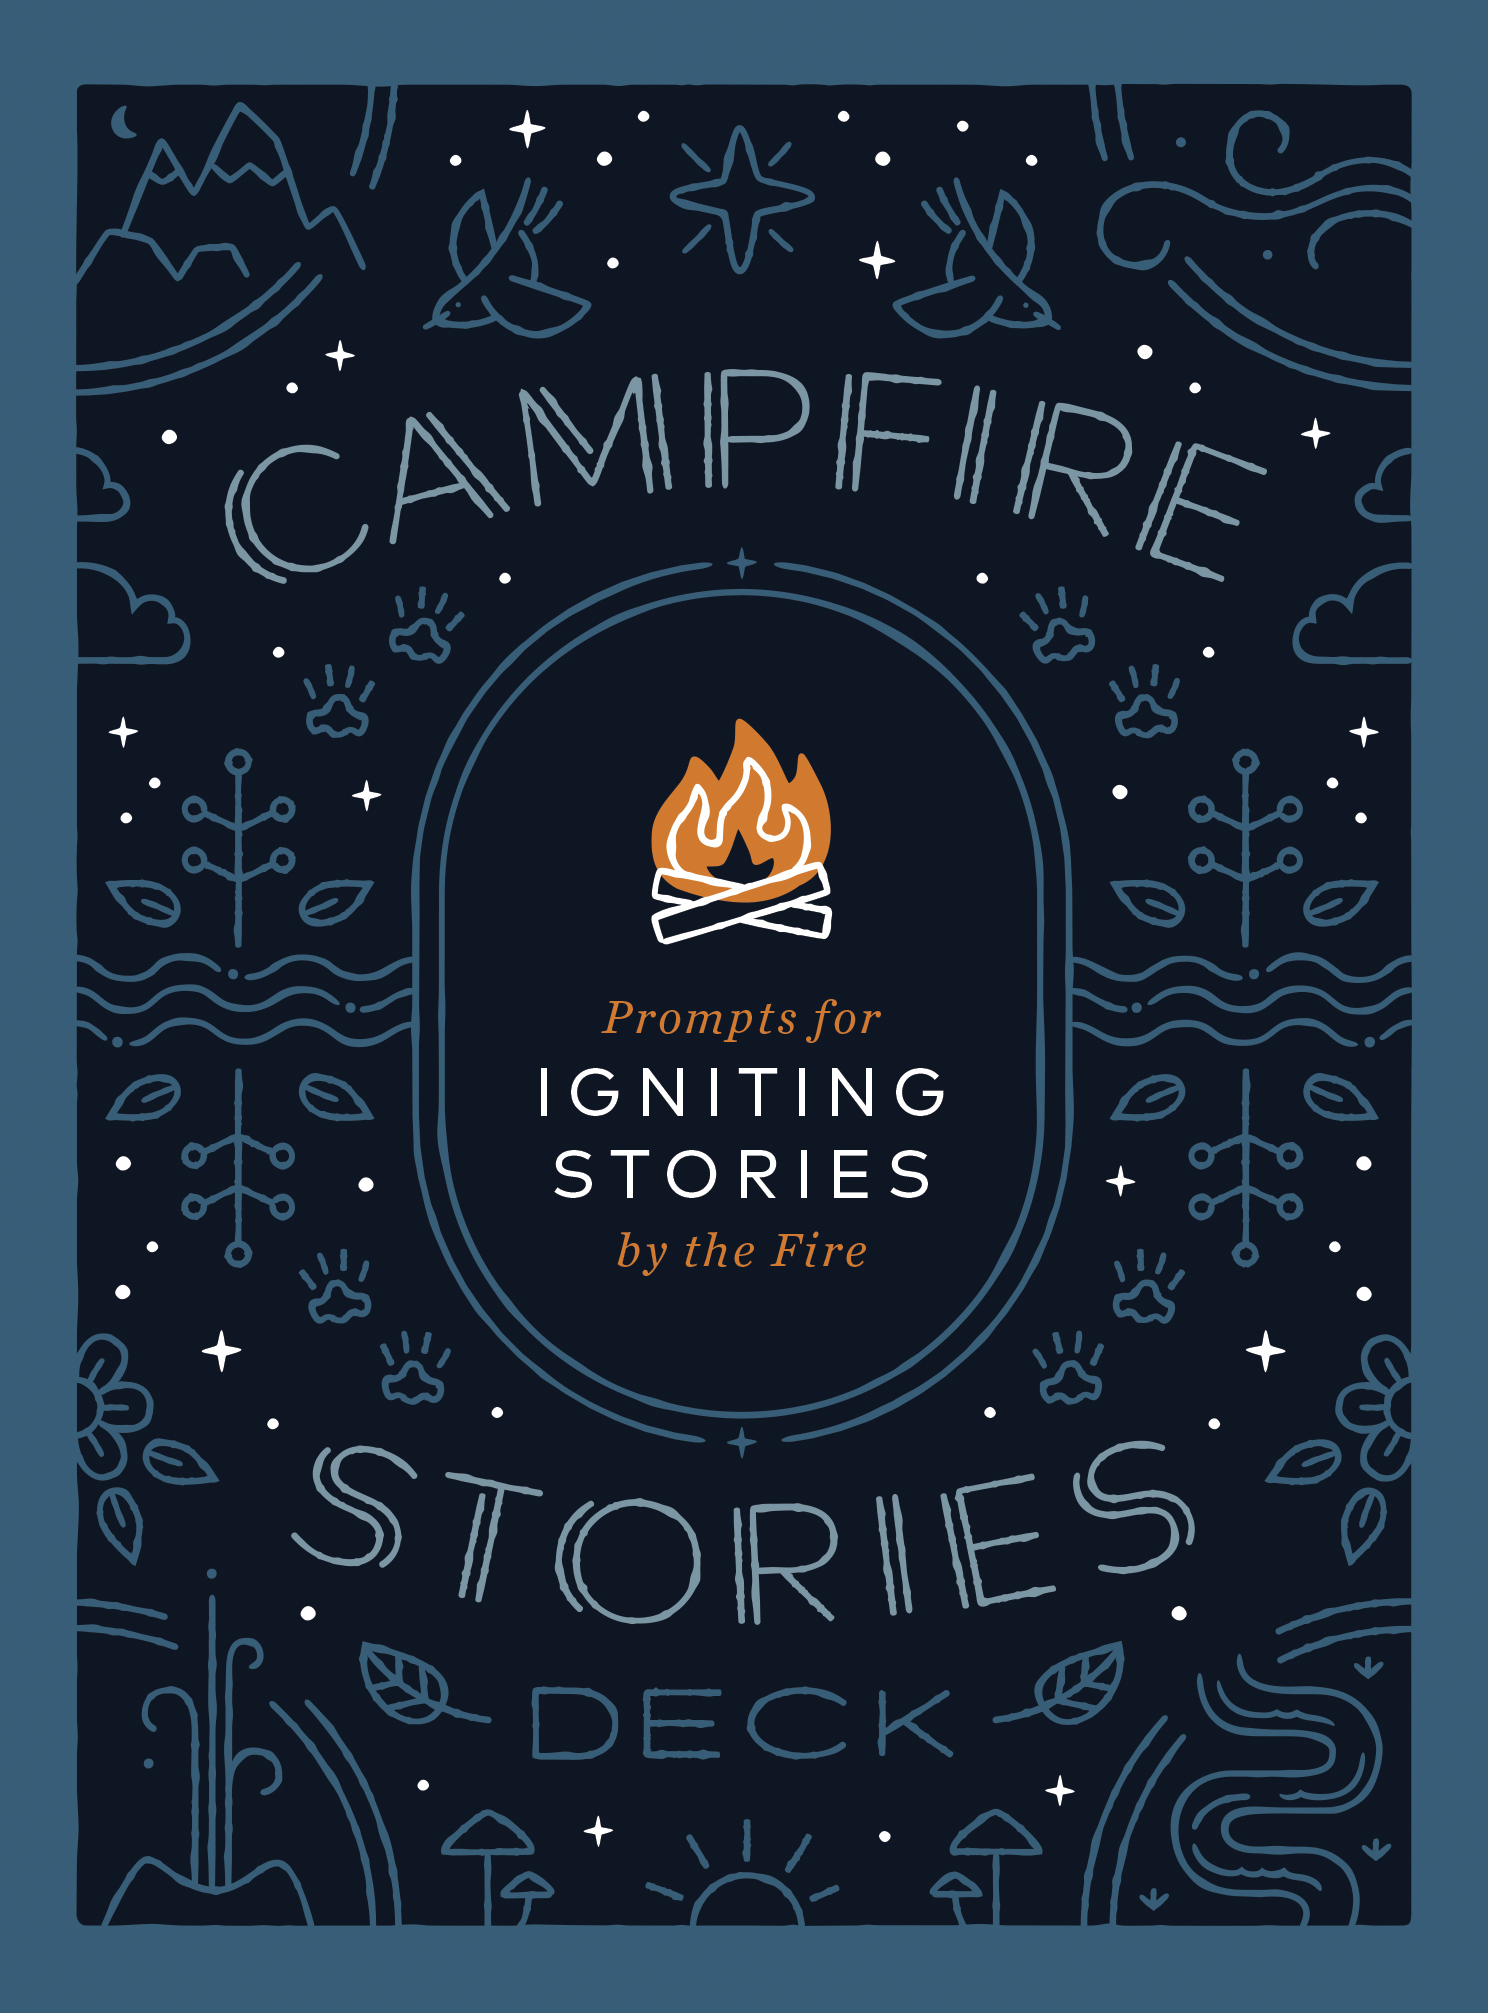 CampfireStoriesDeck_Cover_Final.jpg